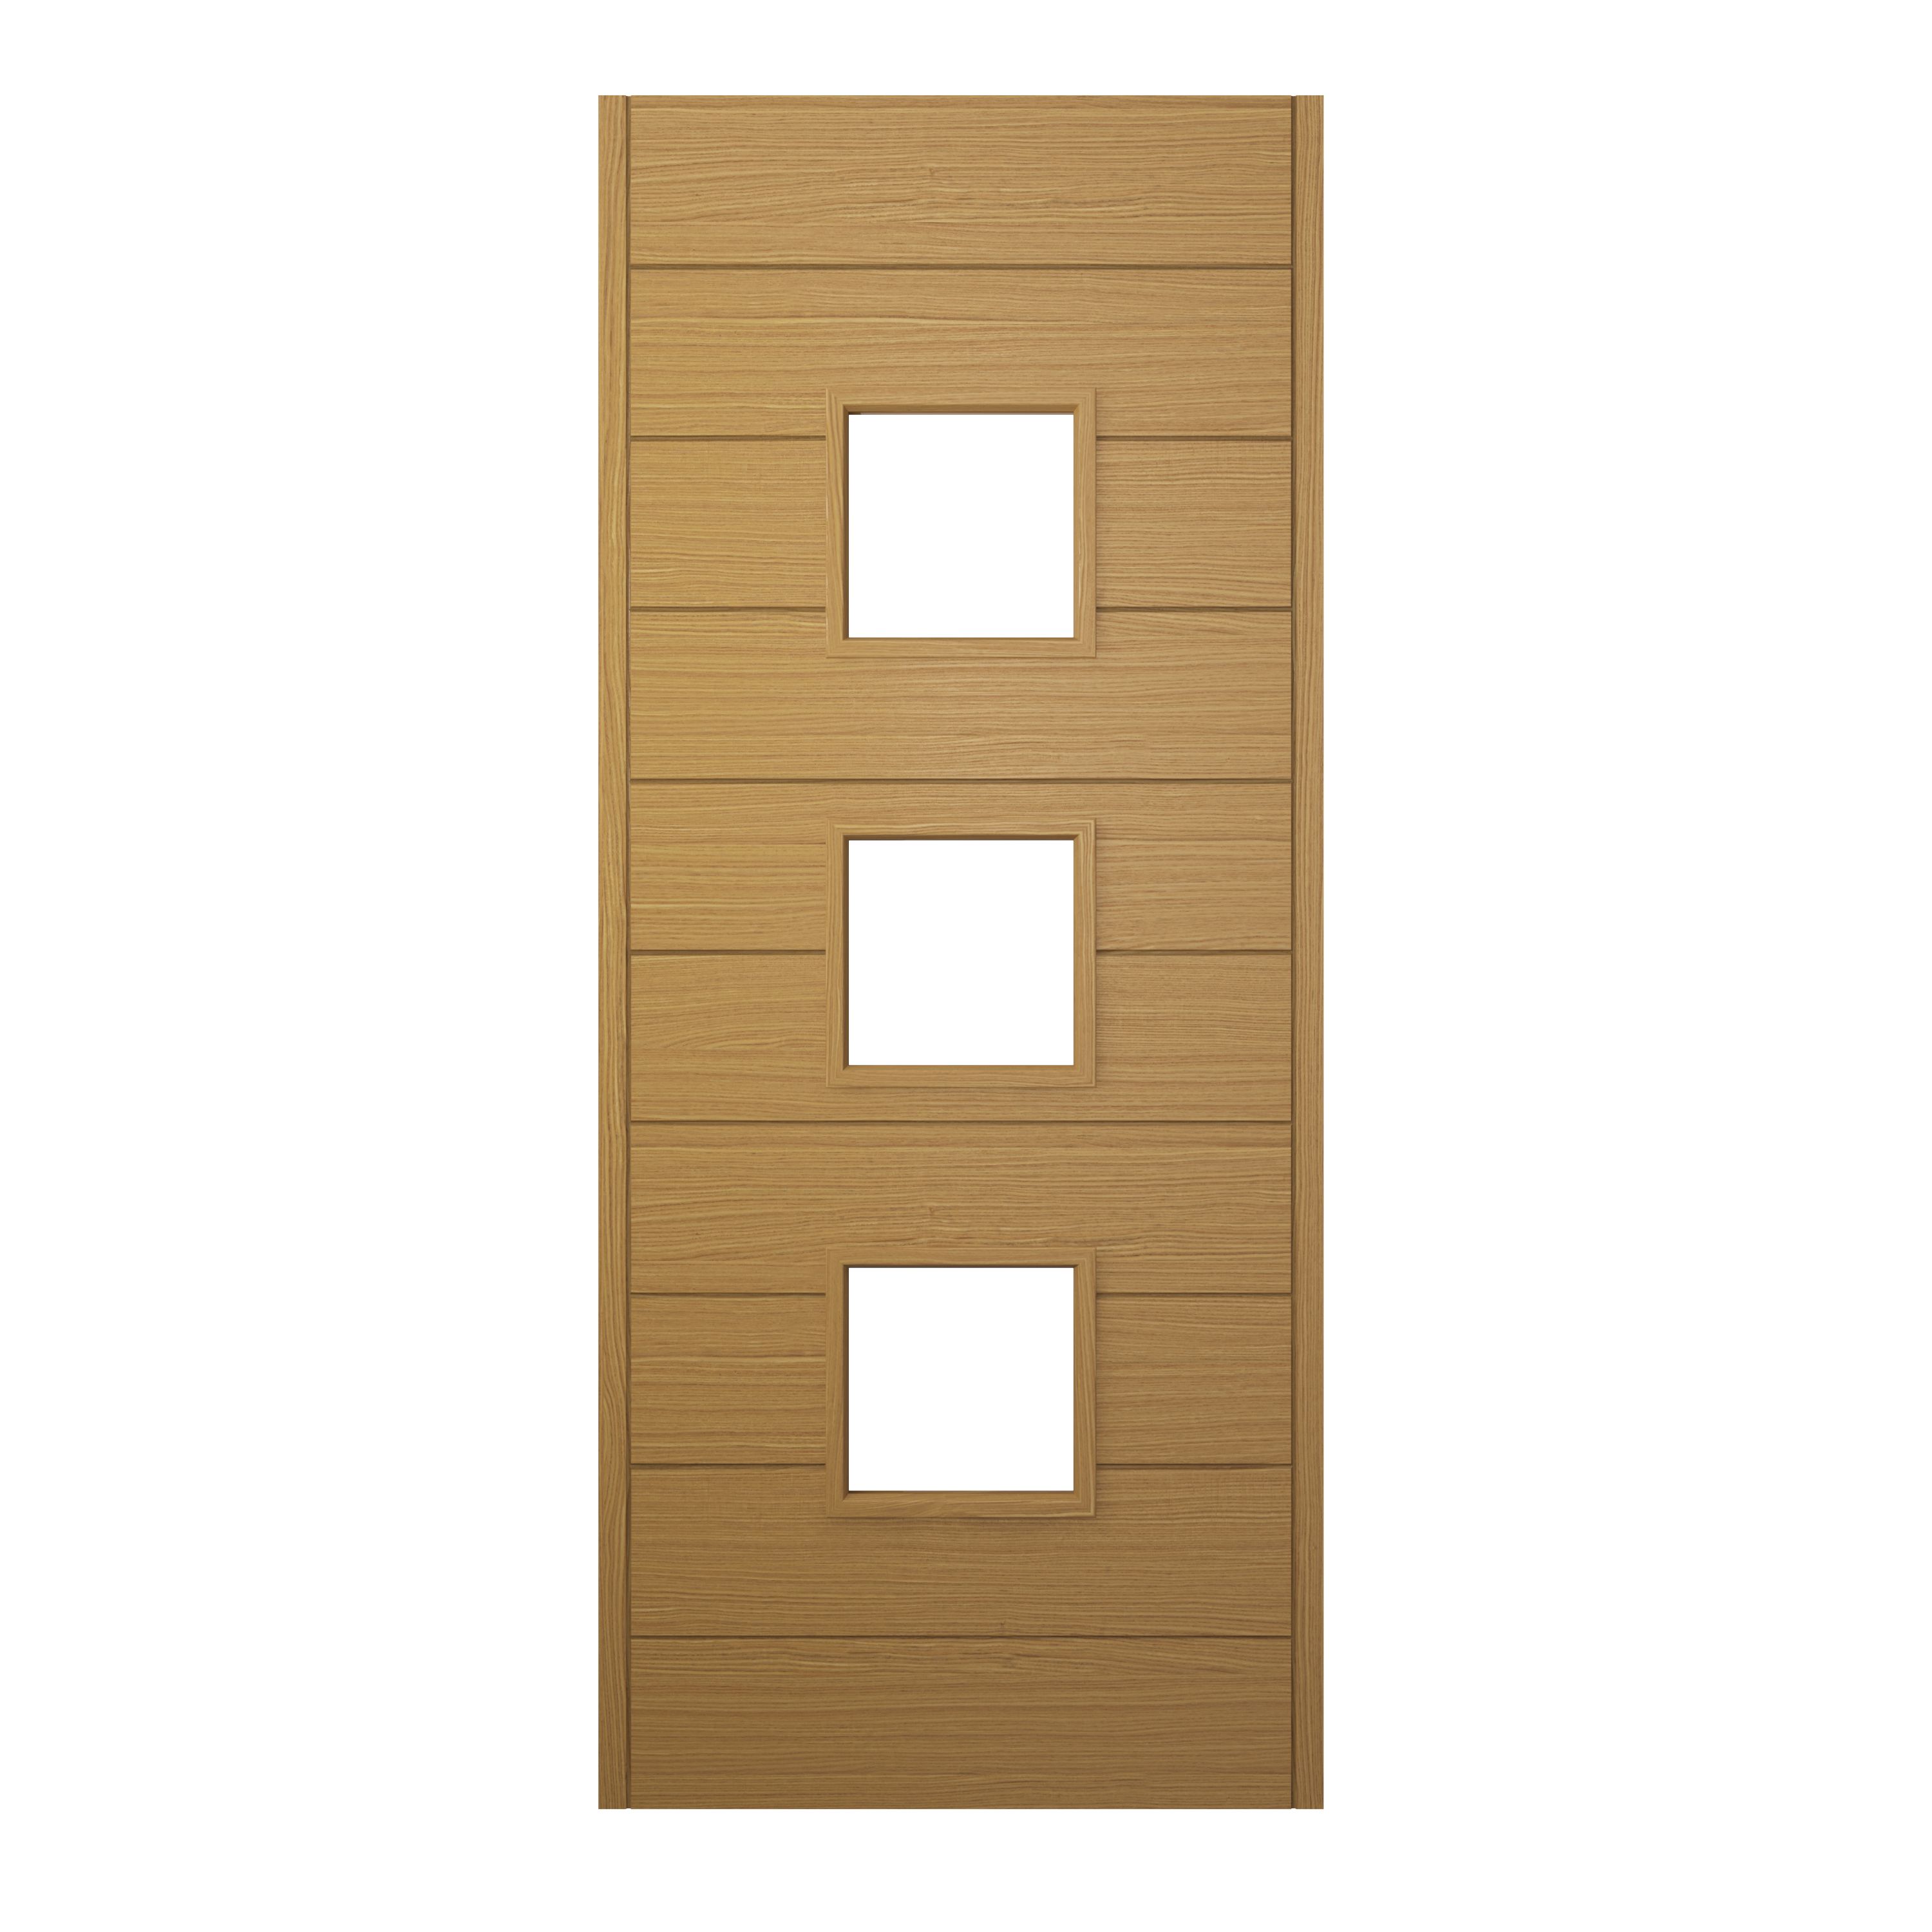 Image of JCI Ultimate Malmo Oak External Hardwood Door with Handle - 2032 x 813mm